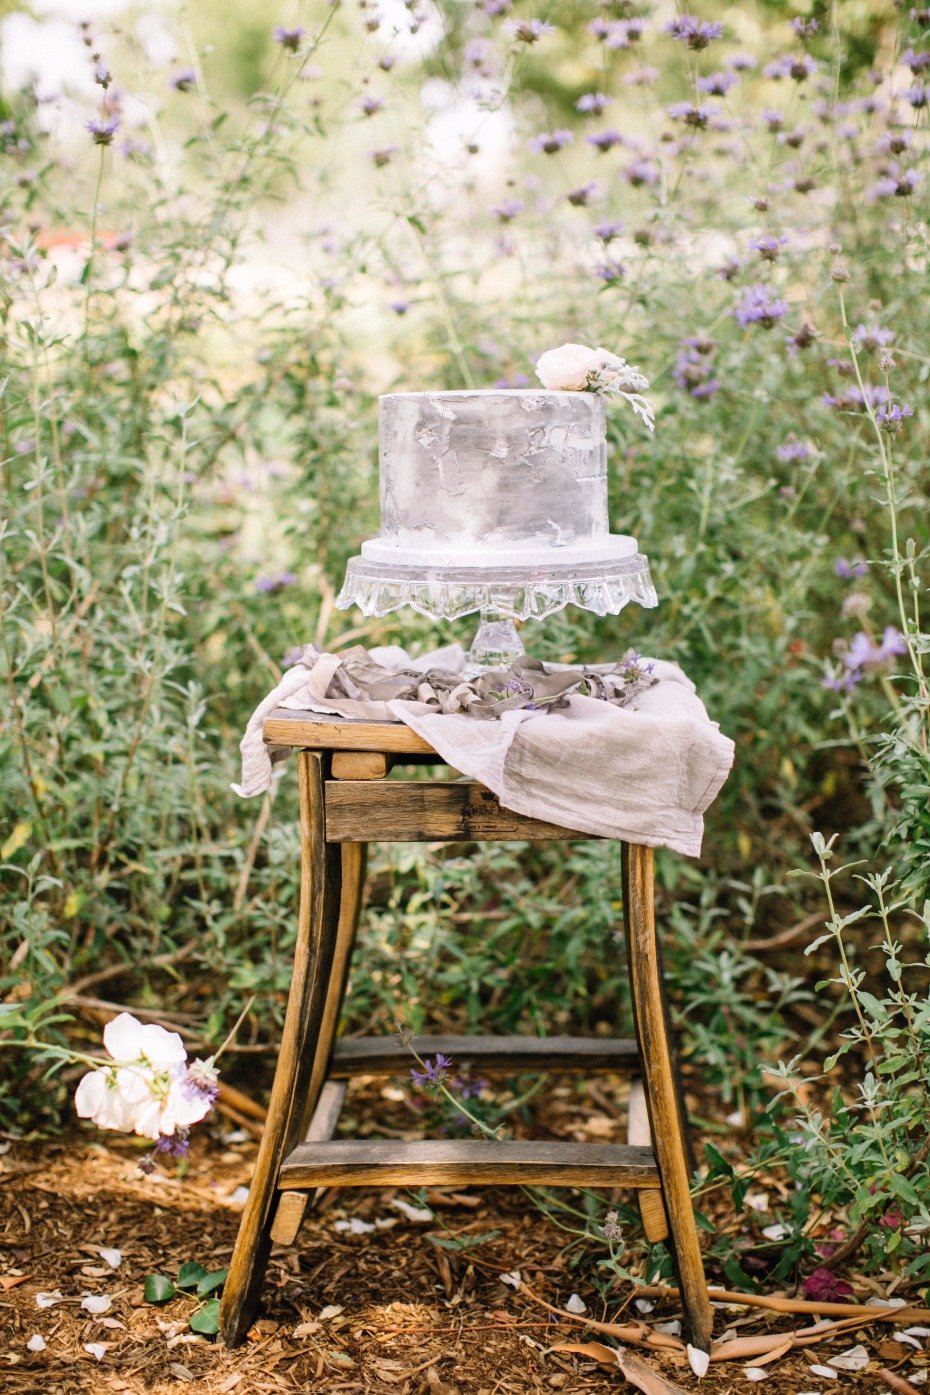 Gray and white wedding cake